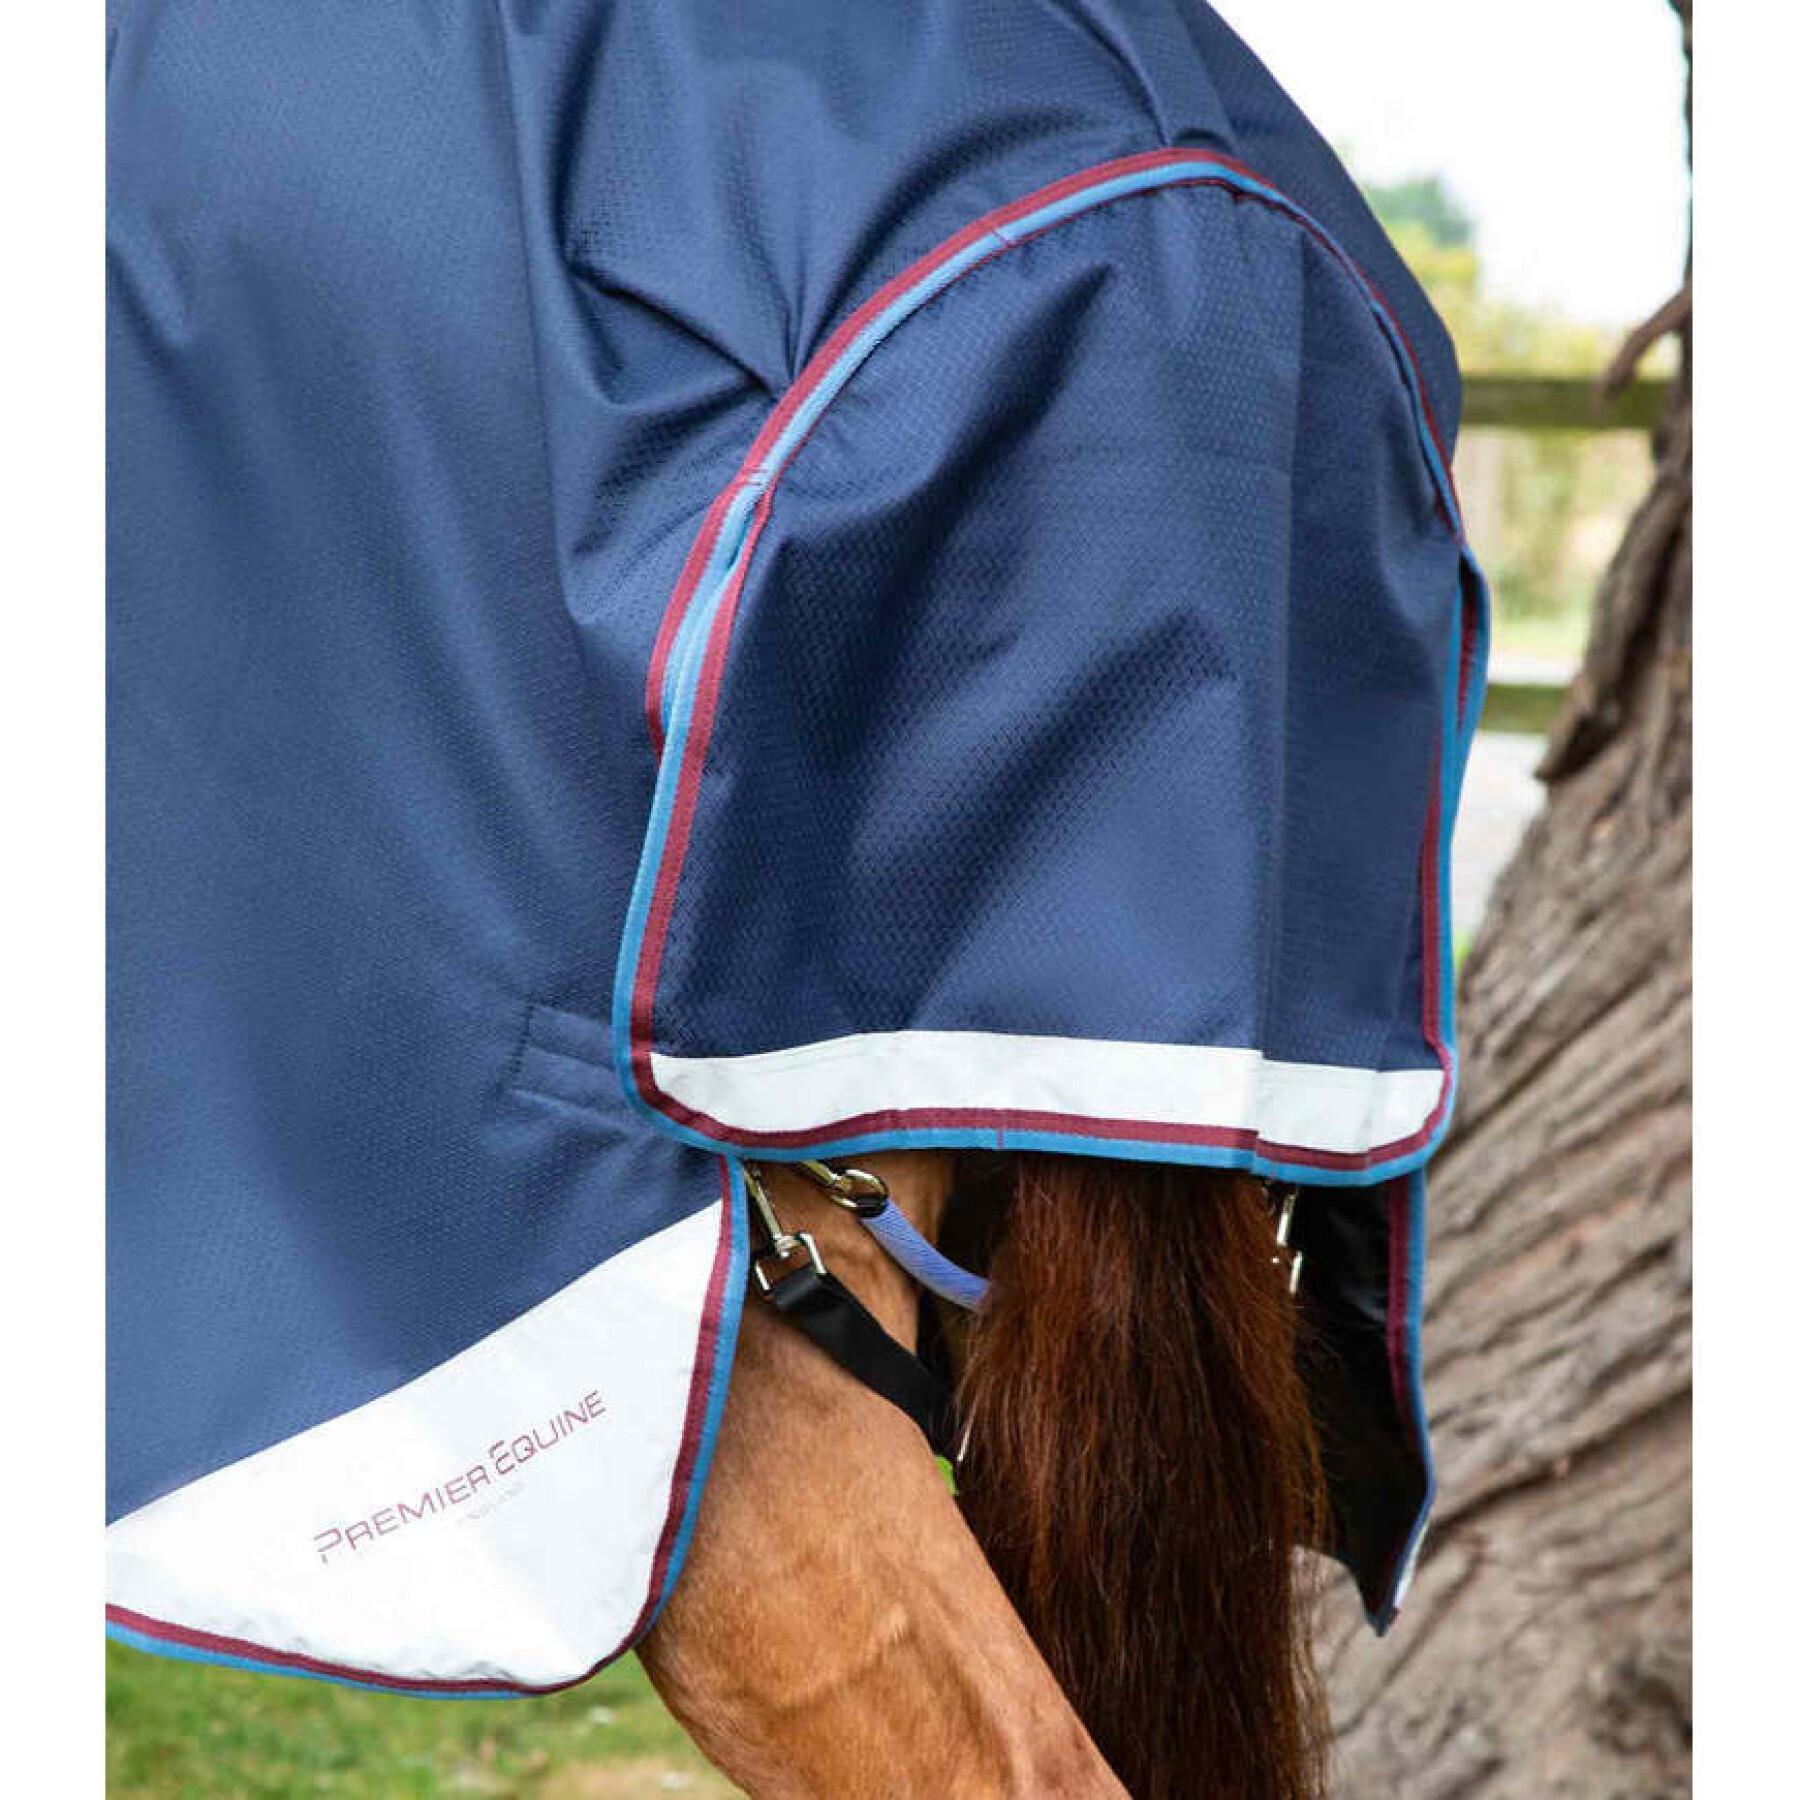 Protetor de pescoço para cavalos para cavalo ao ar livre com cobertura de pescoço Premier Equine Akoni Stratus 0g